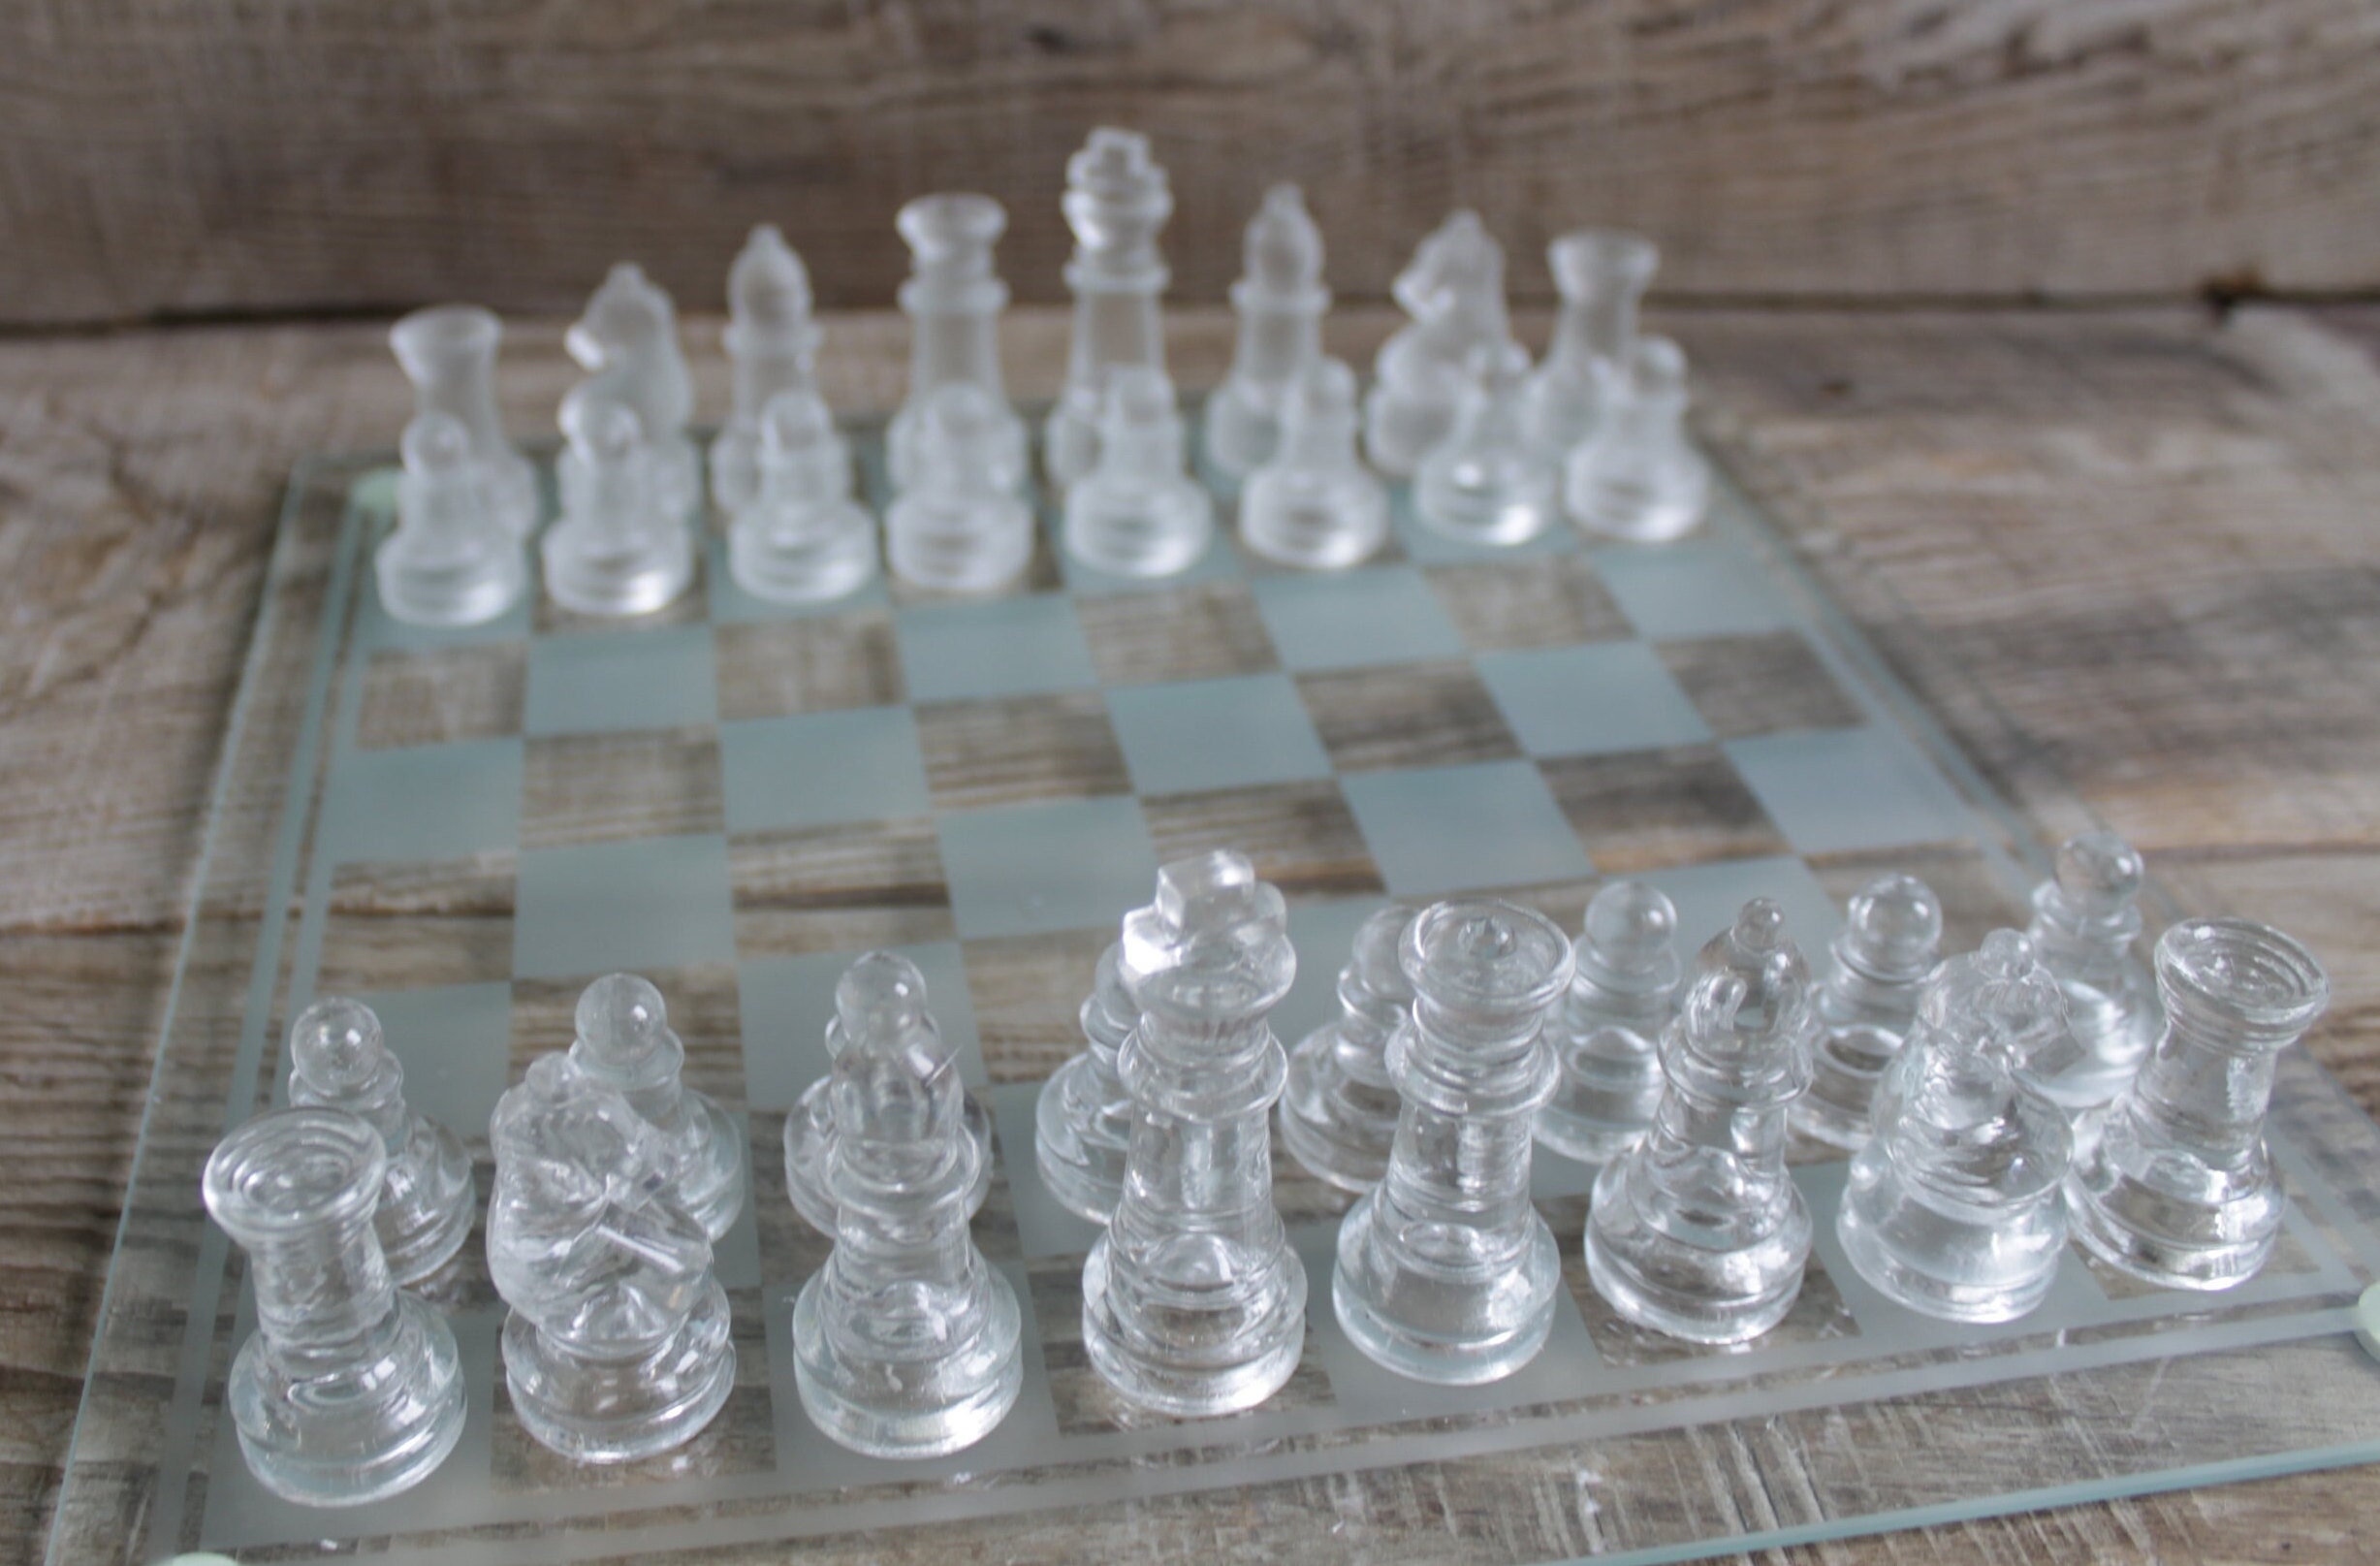 Jogo de xadrez medieval - Cerâmica, Madeira - Catawiki